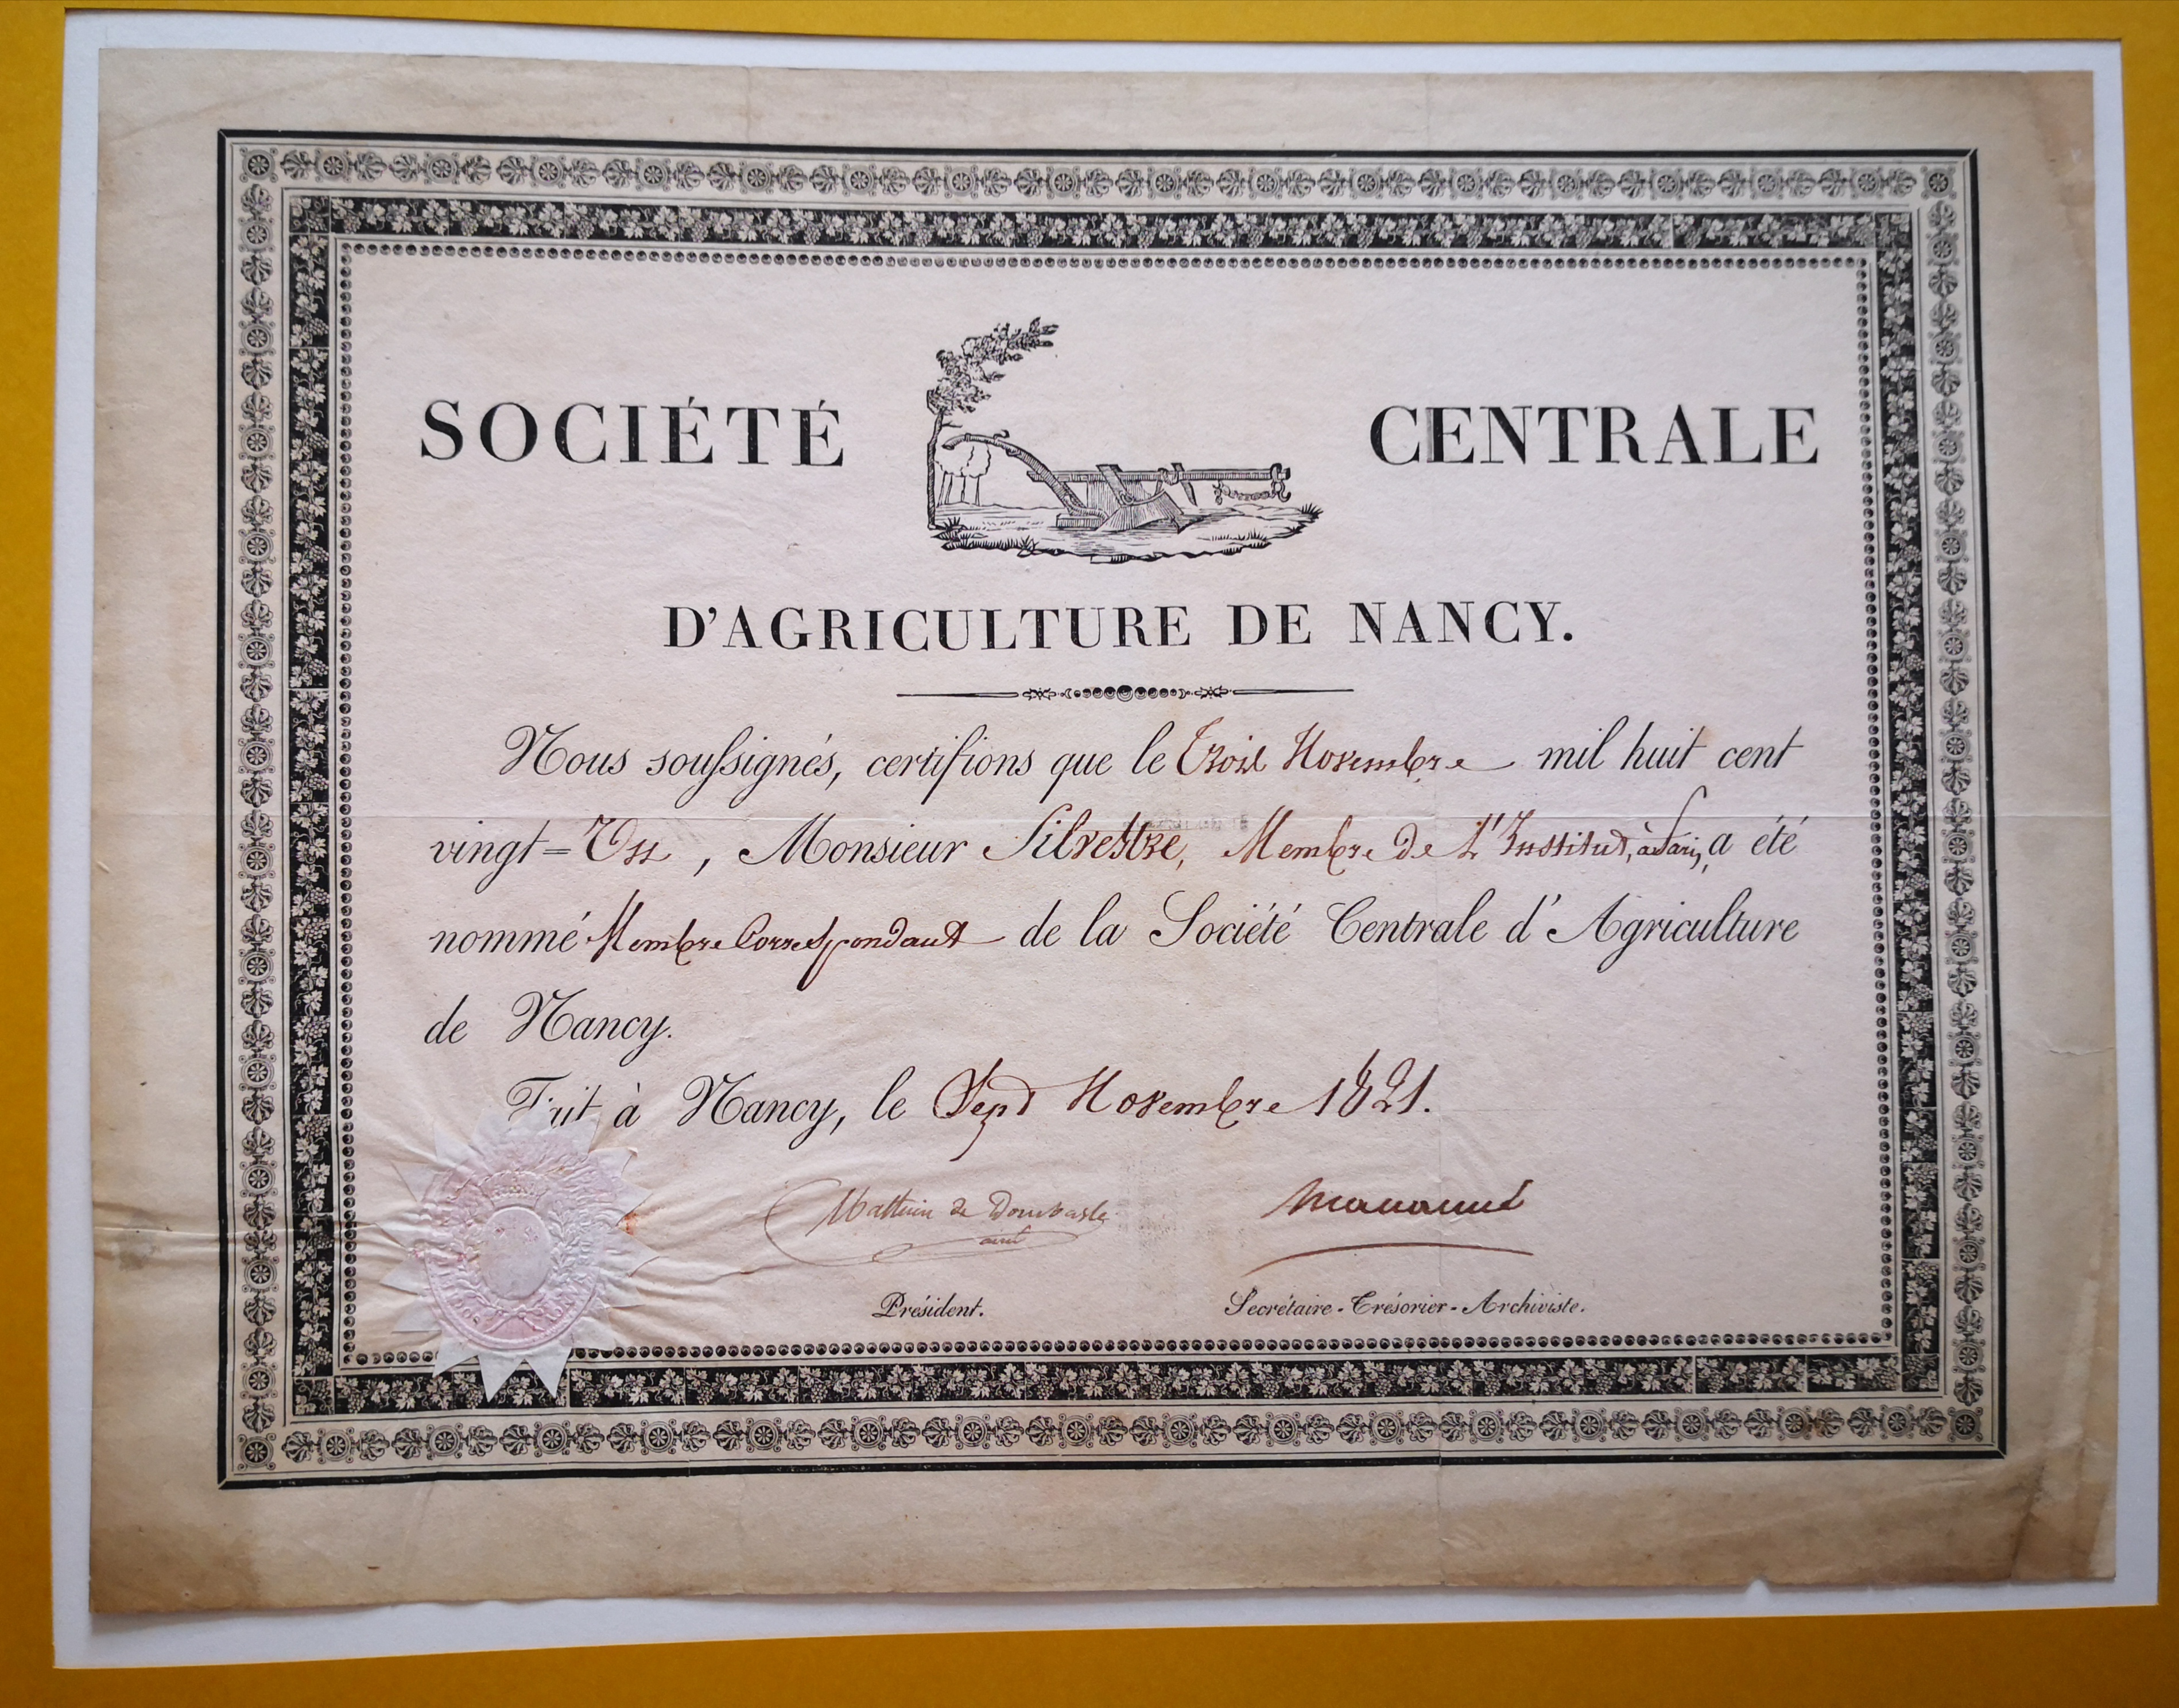  Diplôme de membre correspondant de la Société Centrale d'Agriculture de Nancy  - Document 1